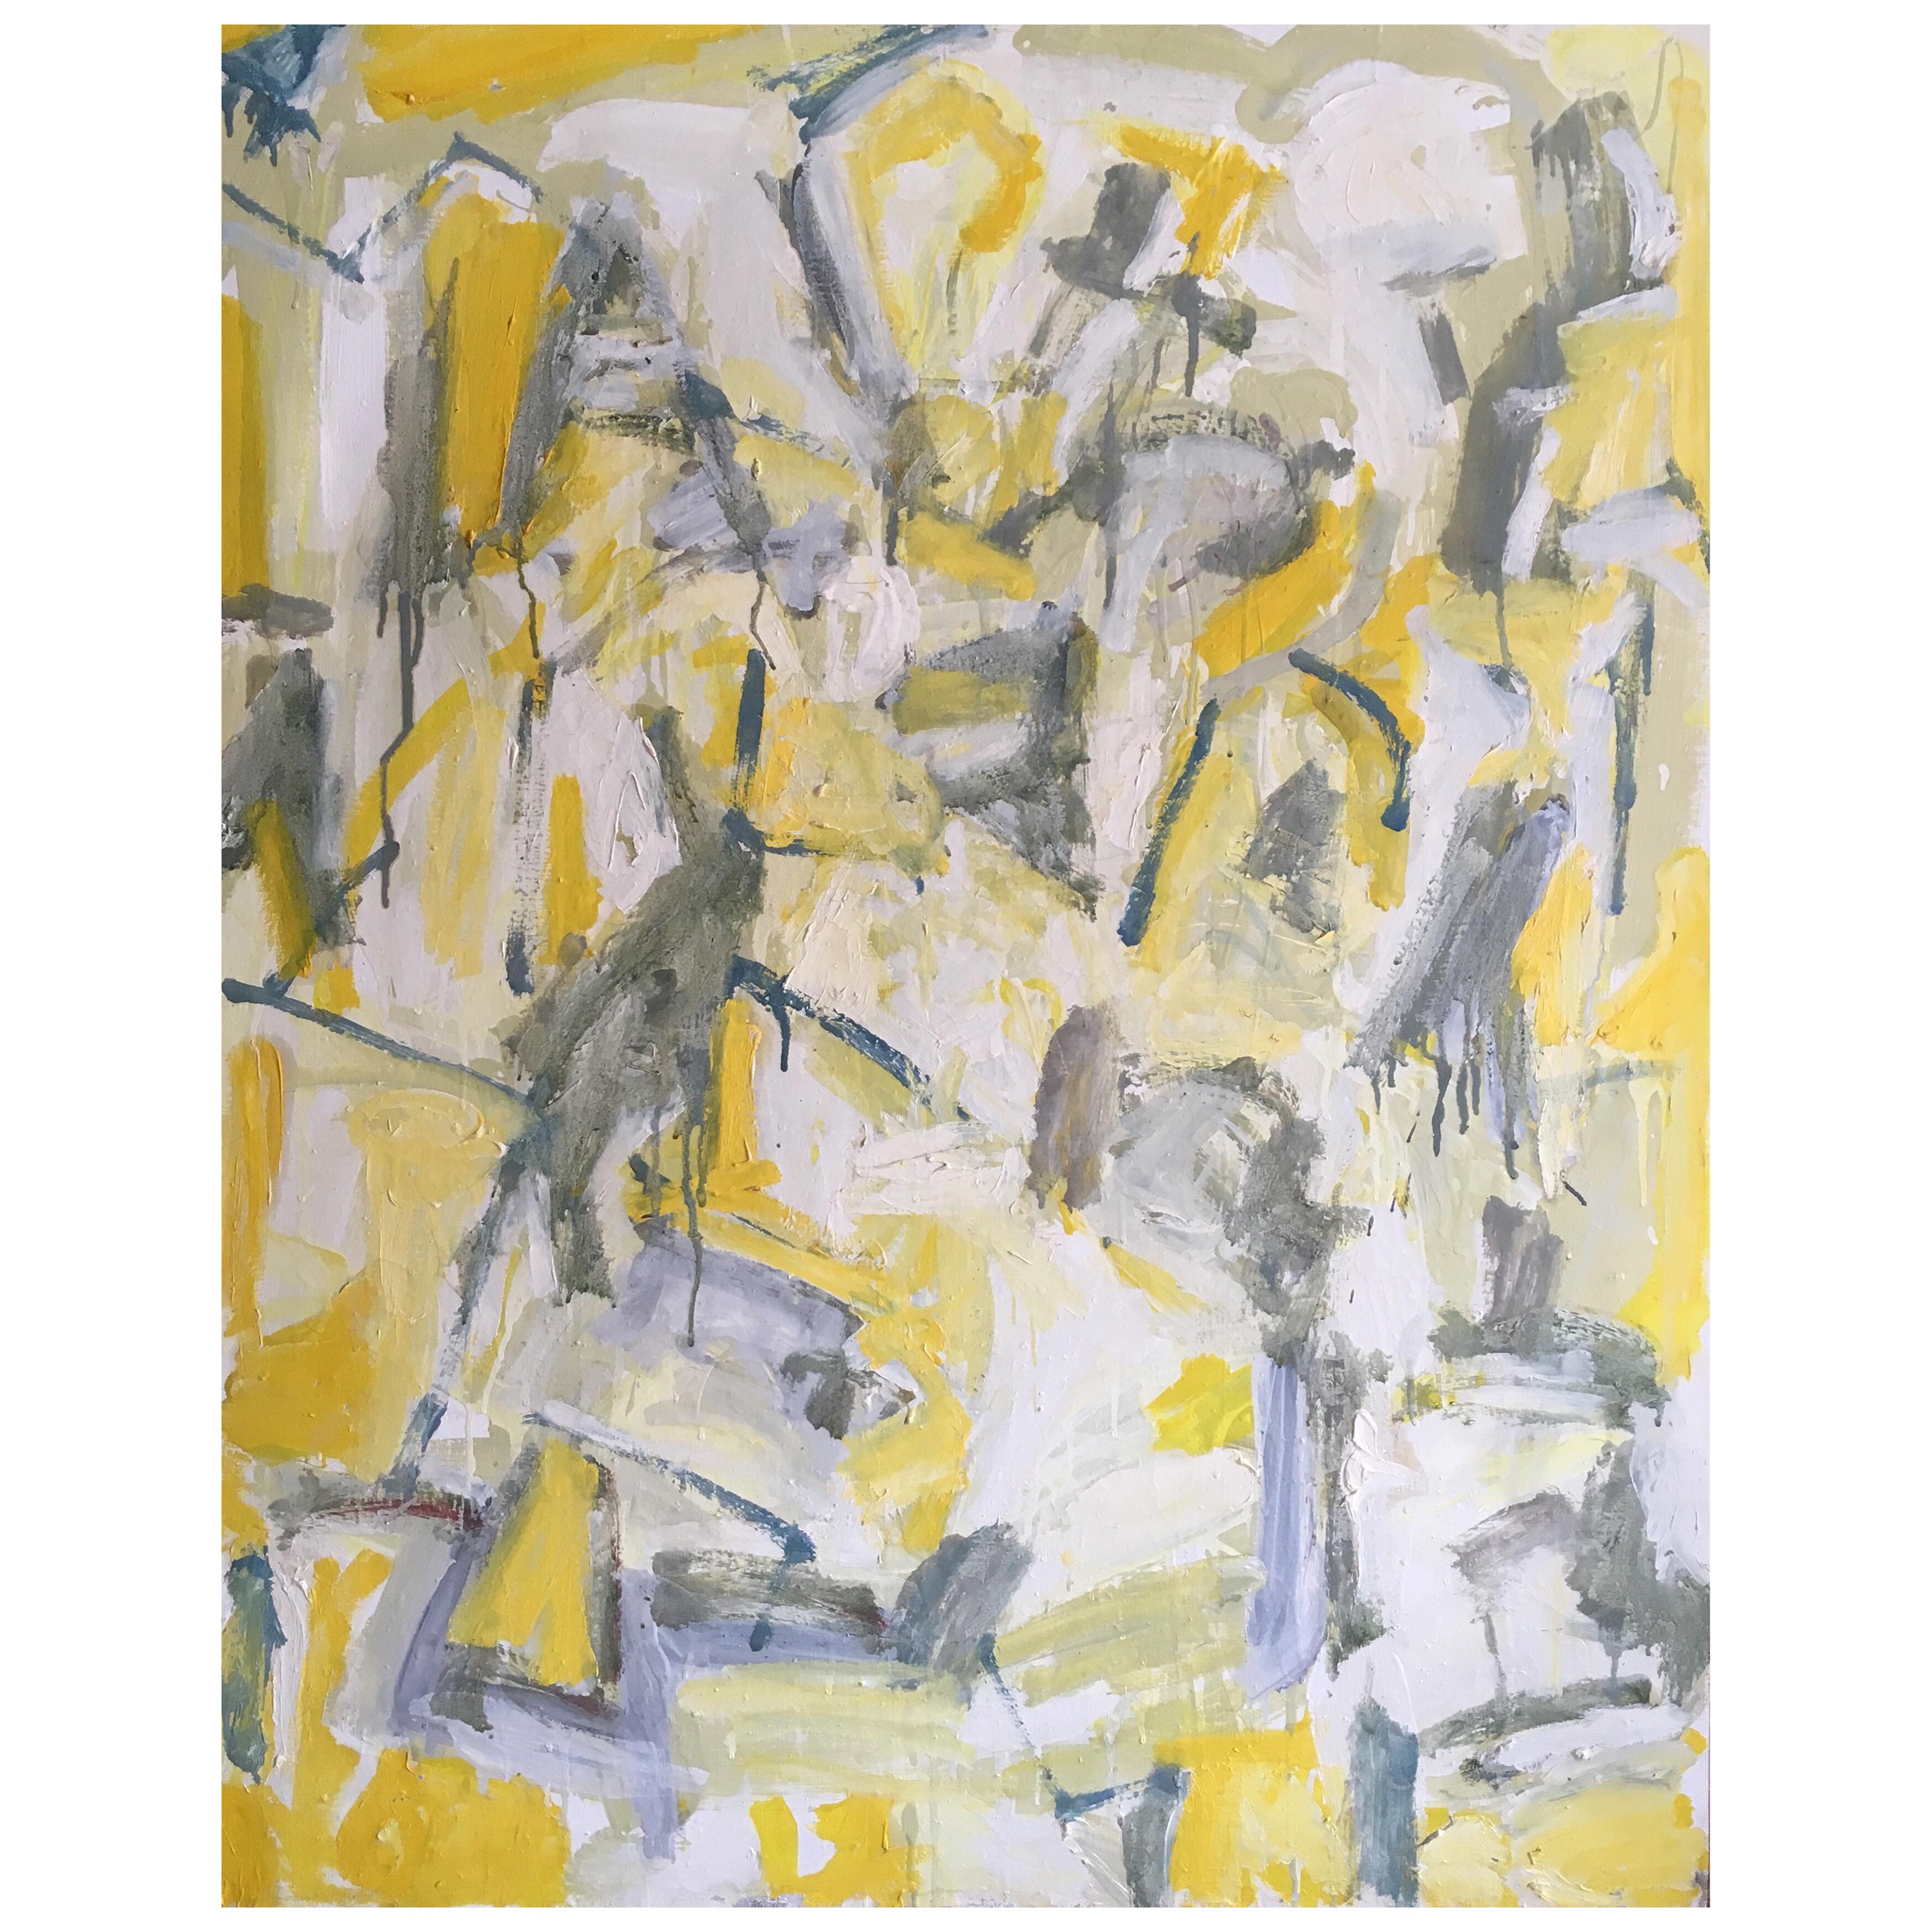 Unknown Interior Painting – Abstraktes, großes Ölgemälde auf Leinwand, kubistisches expressionistisches Werk in Gelb und Grau